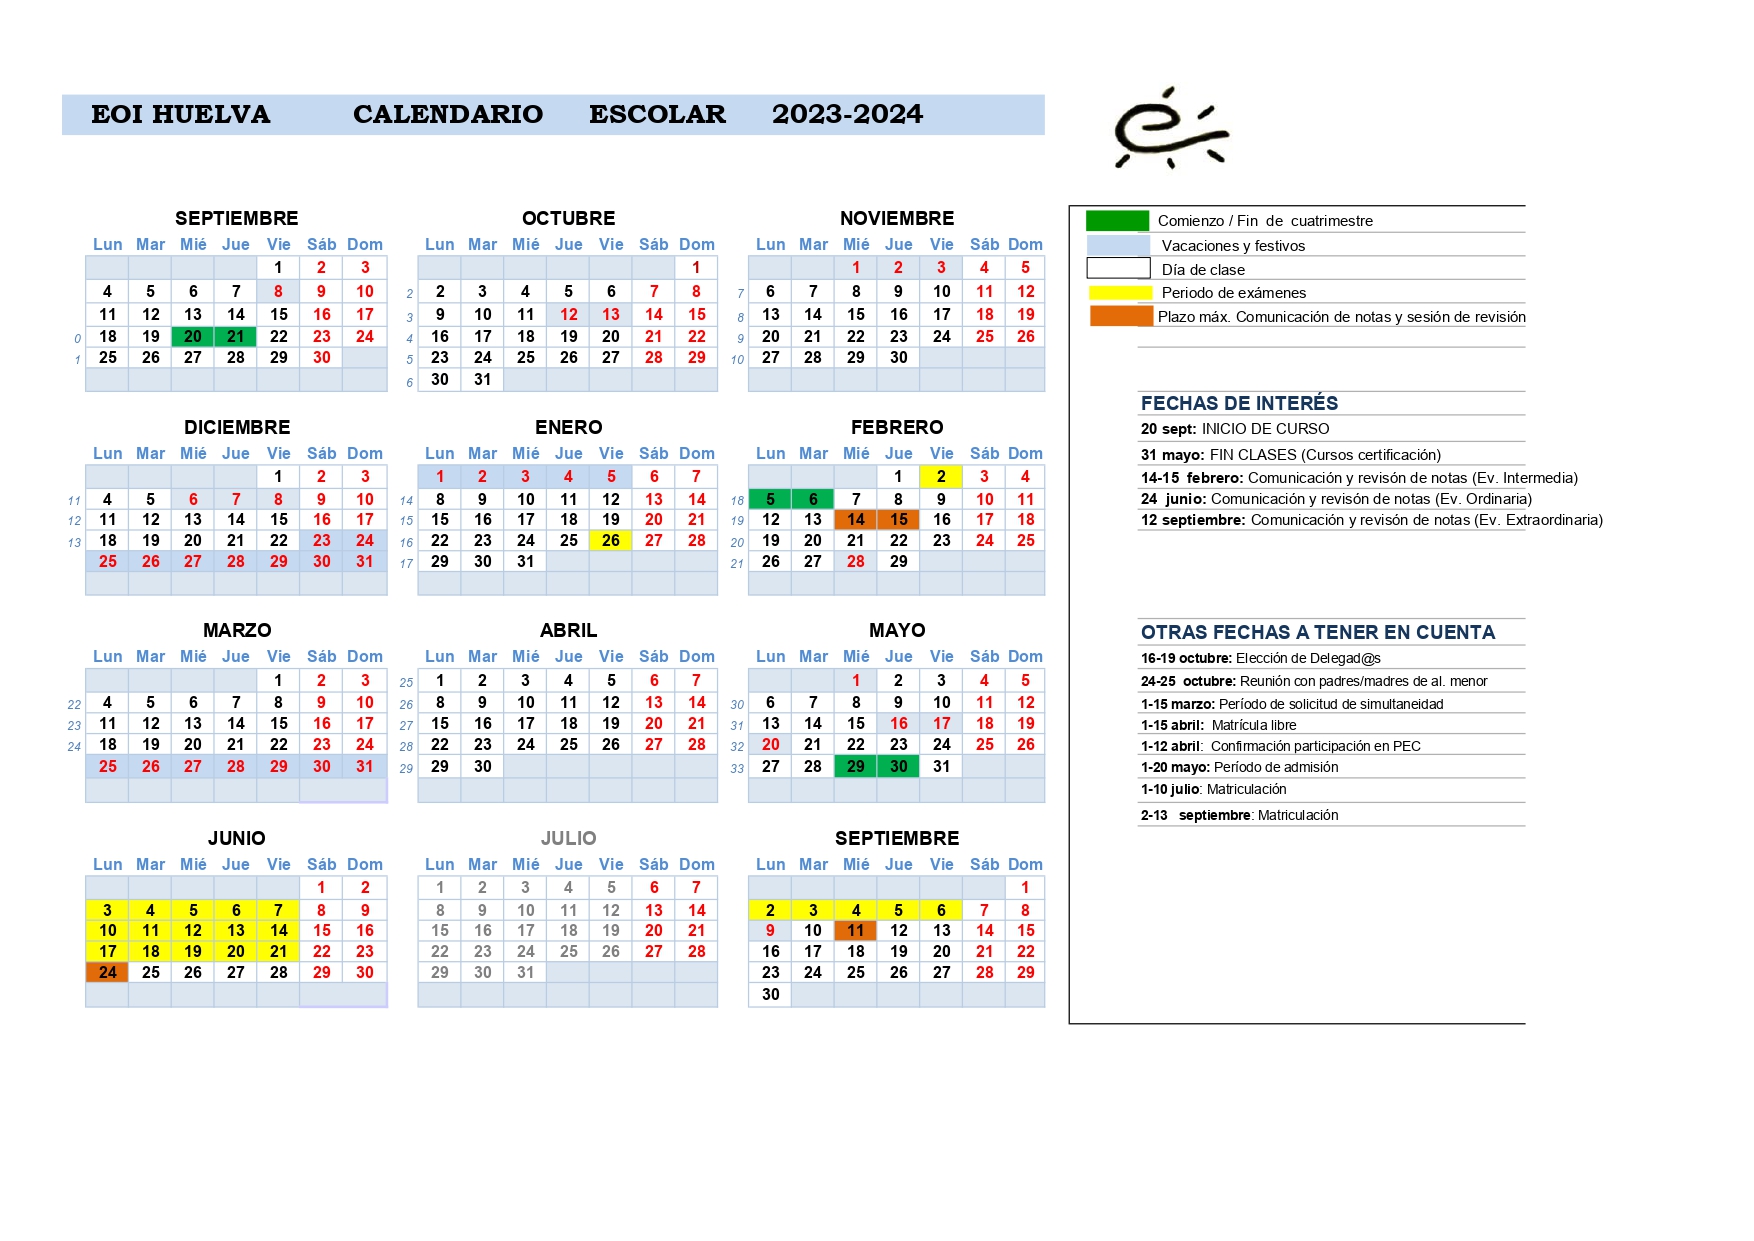 Calendario escolar EOI Huelva 23-24